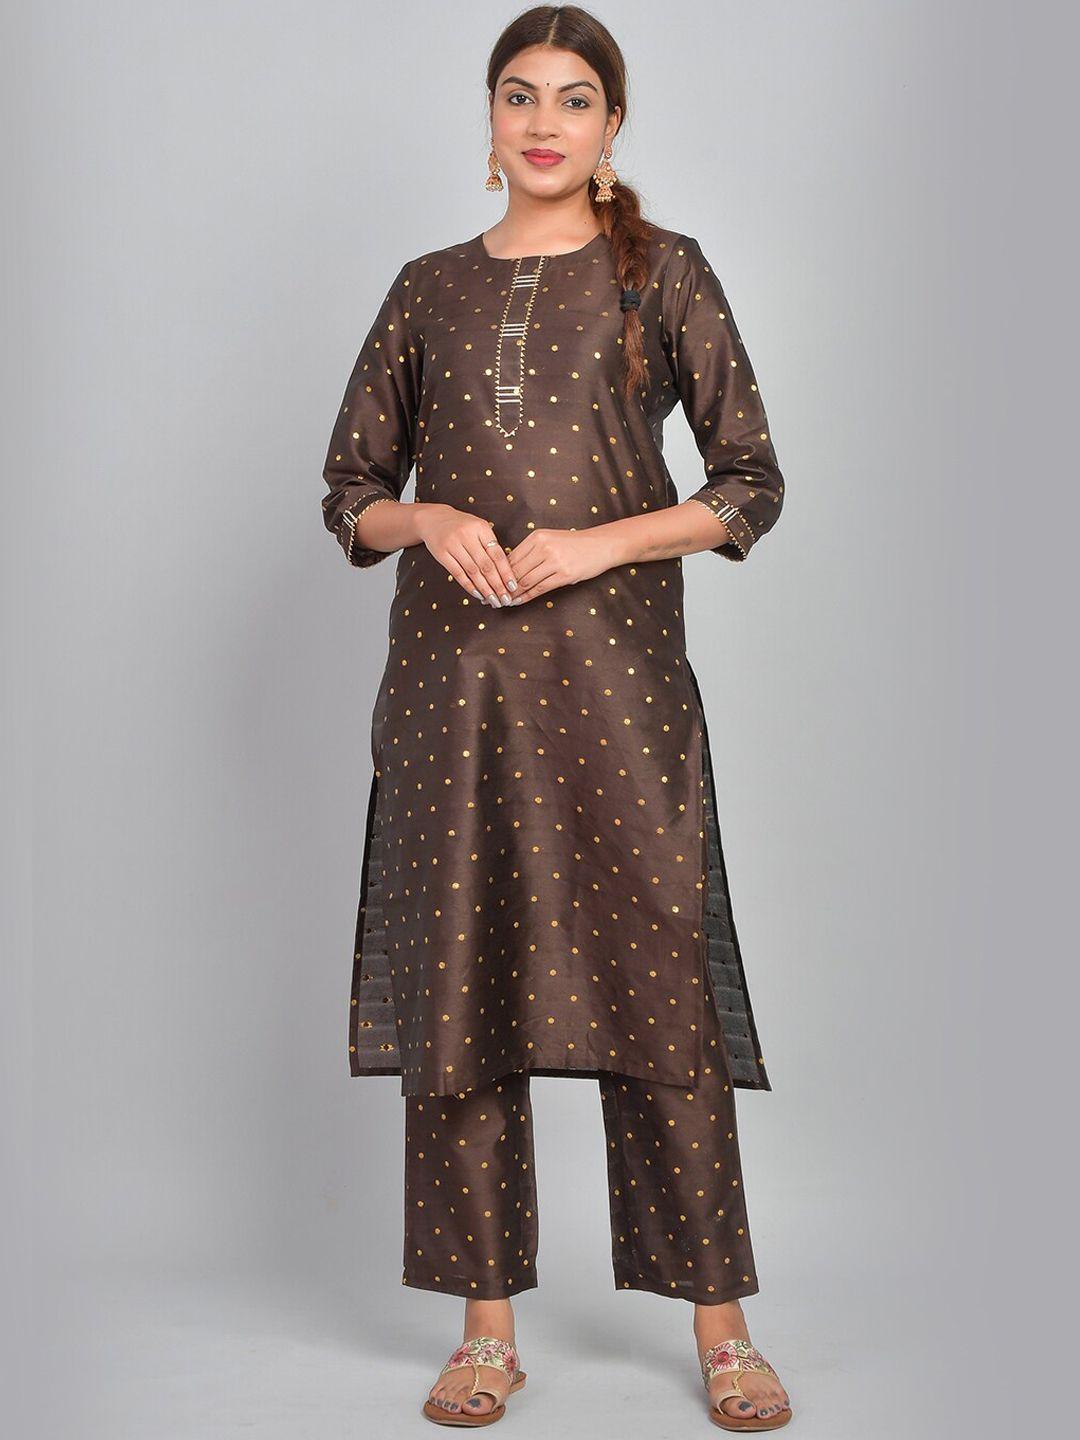 riara women brown printed regular kurta with trousers